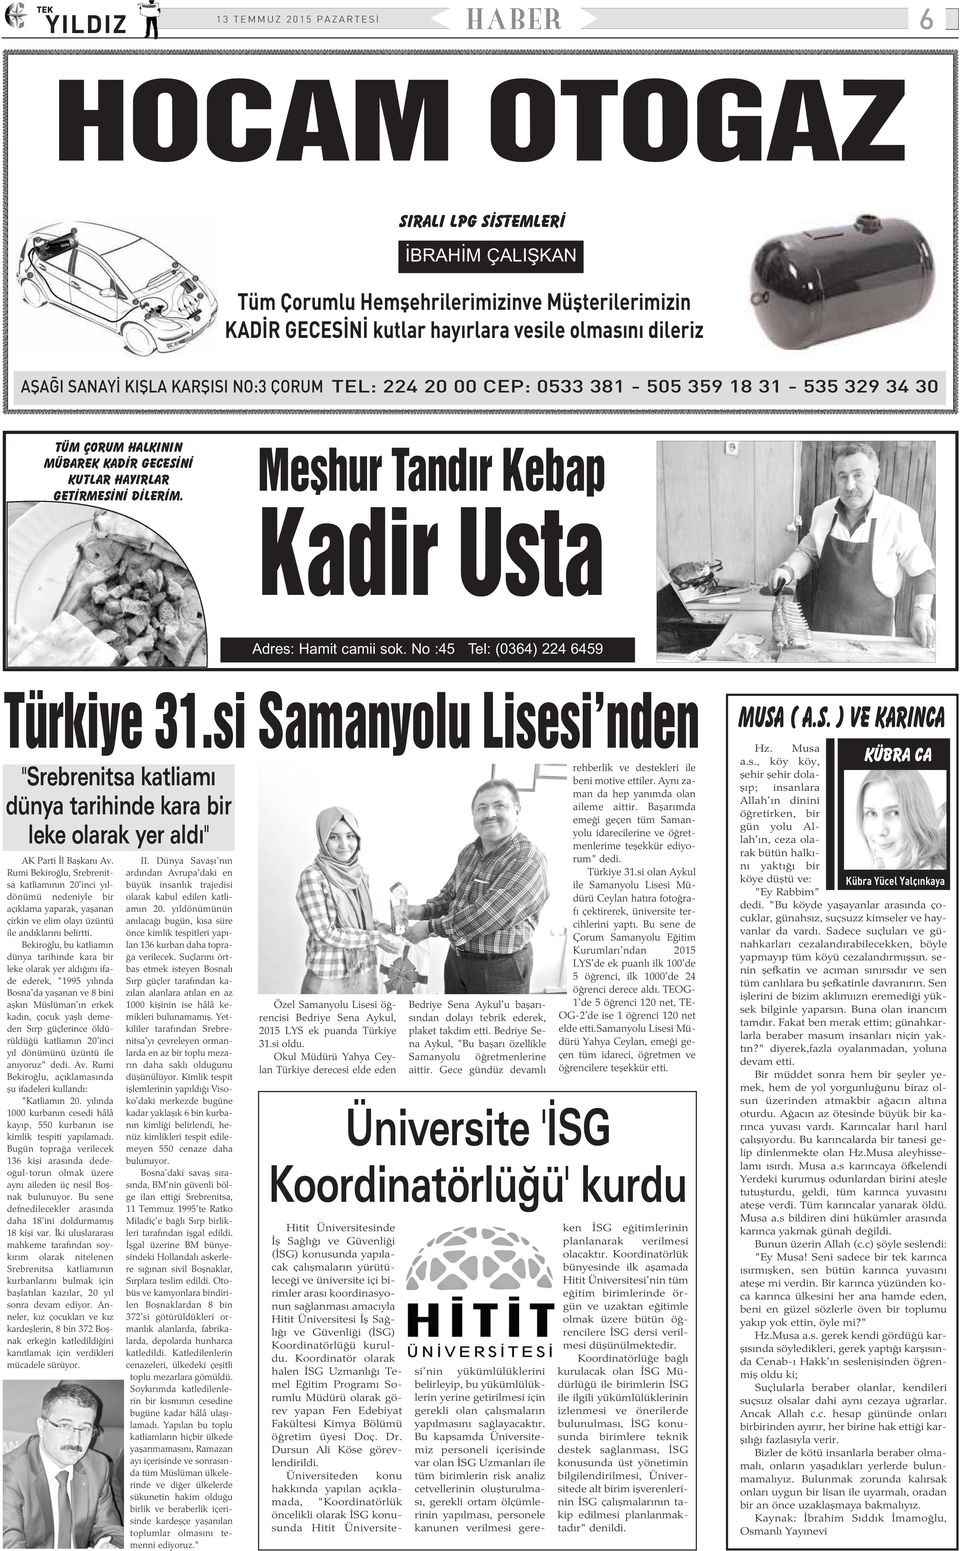 No :45 Tel: (0364) 224 6459 Türkiye 31.si Samanyolu Lisesi'nden rehberlik ve destekleri ile "Srebrenitsa katliamý beni motive ettiler.